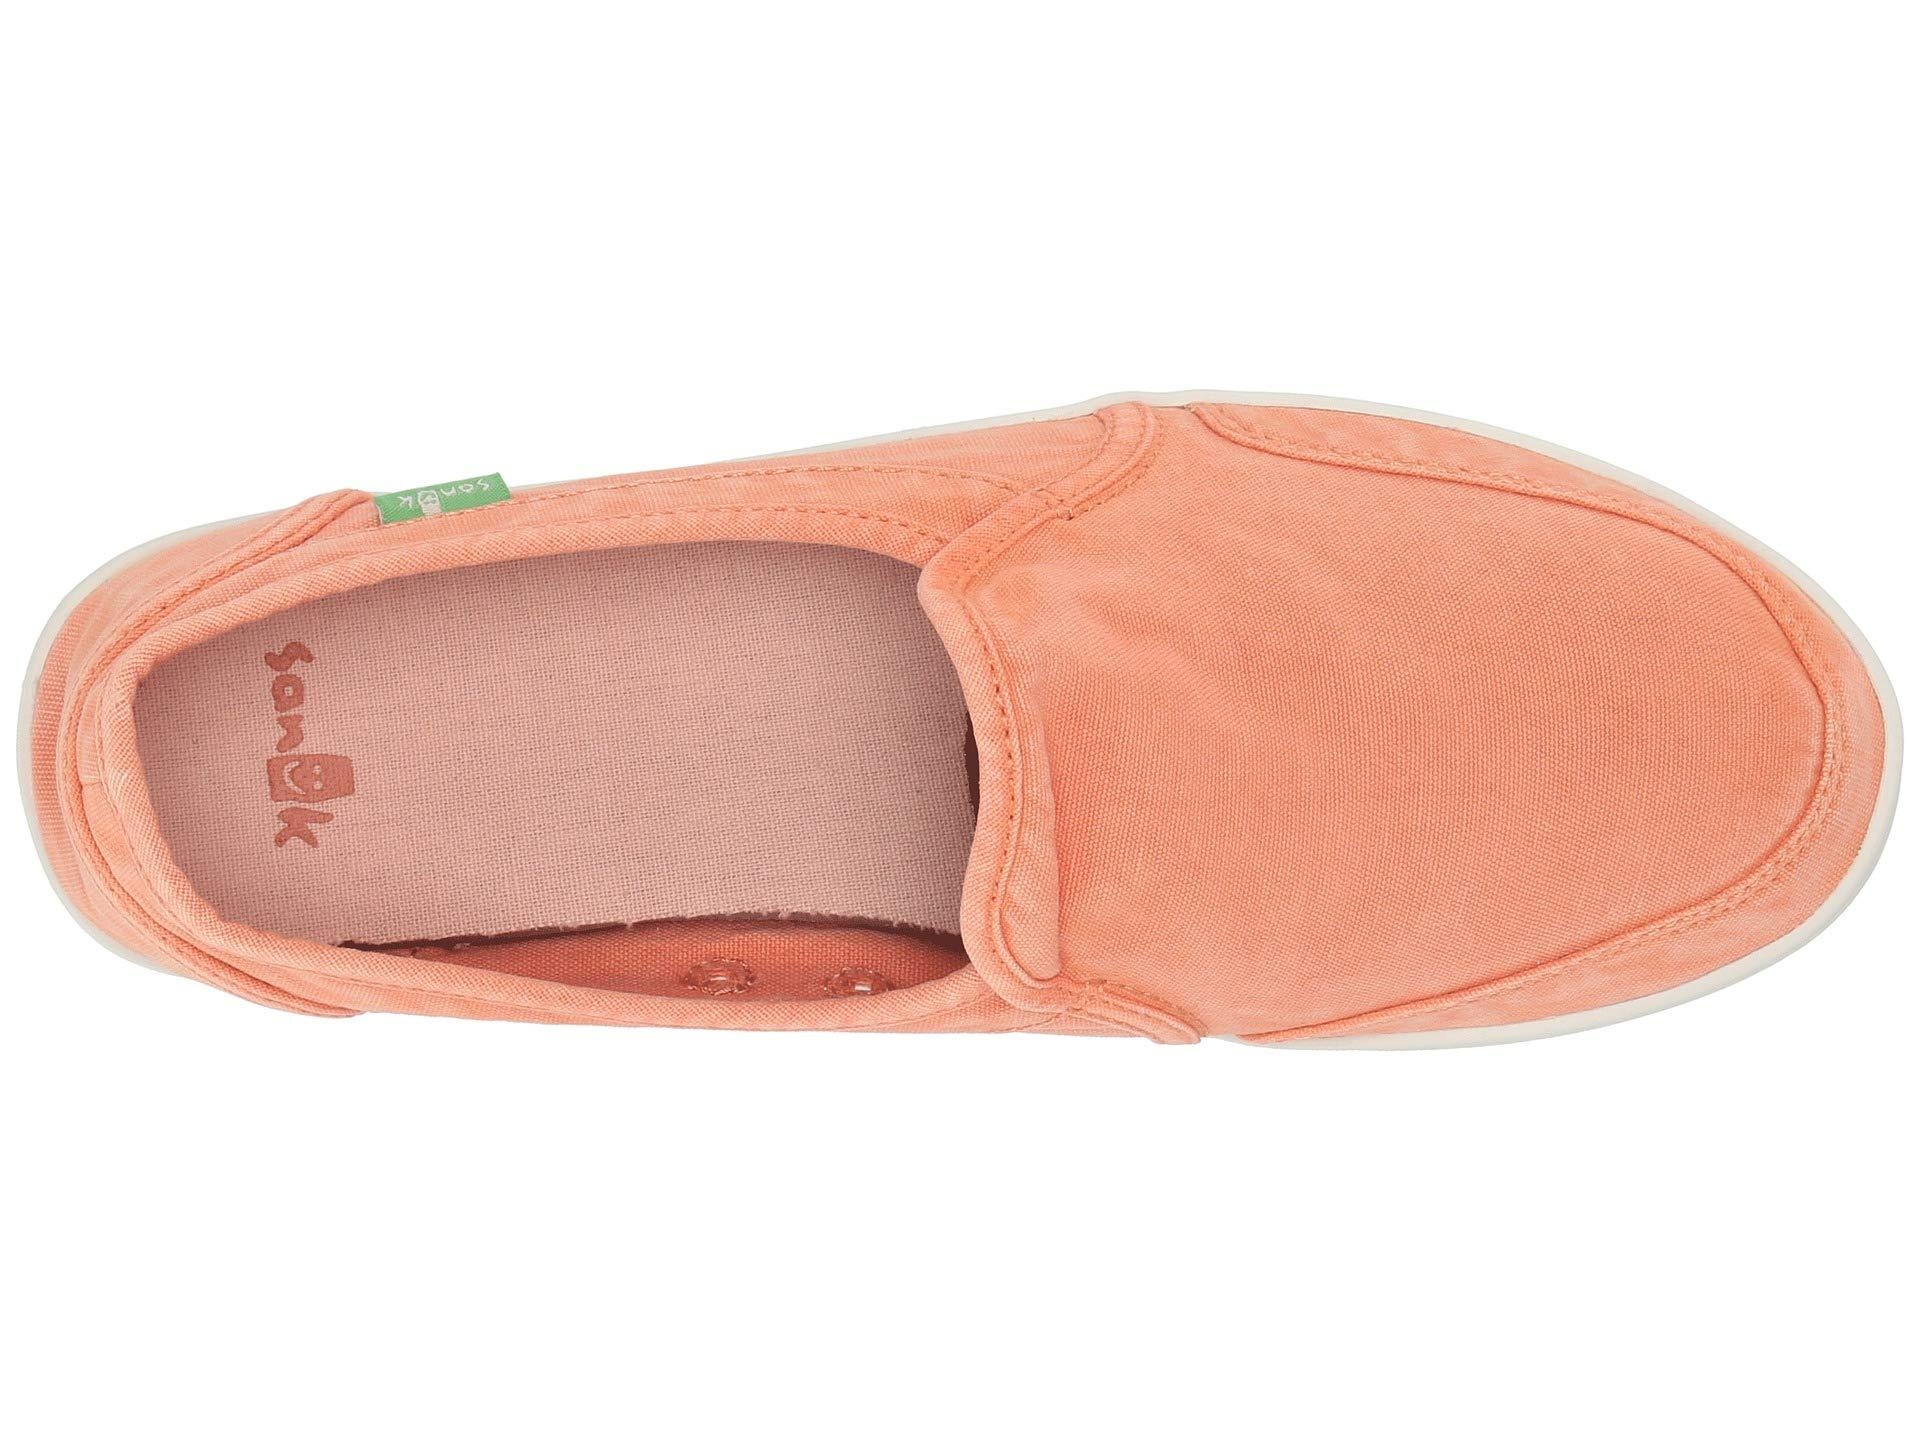 Sanuk Sanuk Women's Pair O Dice Slip On Shoes - Coral